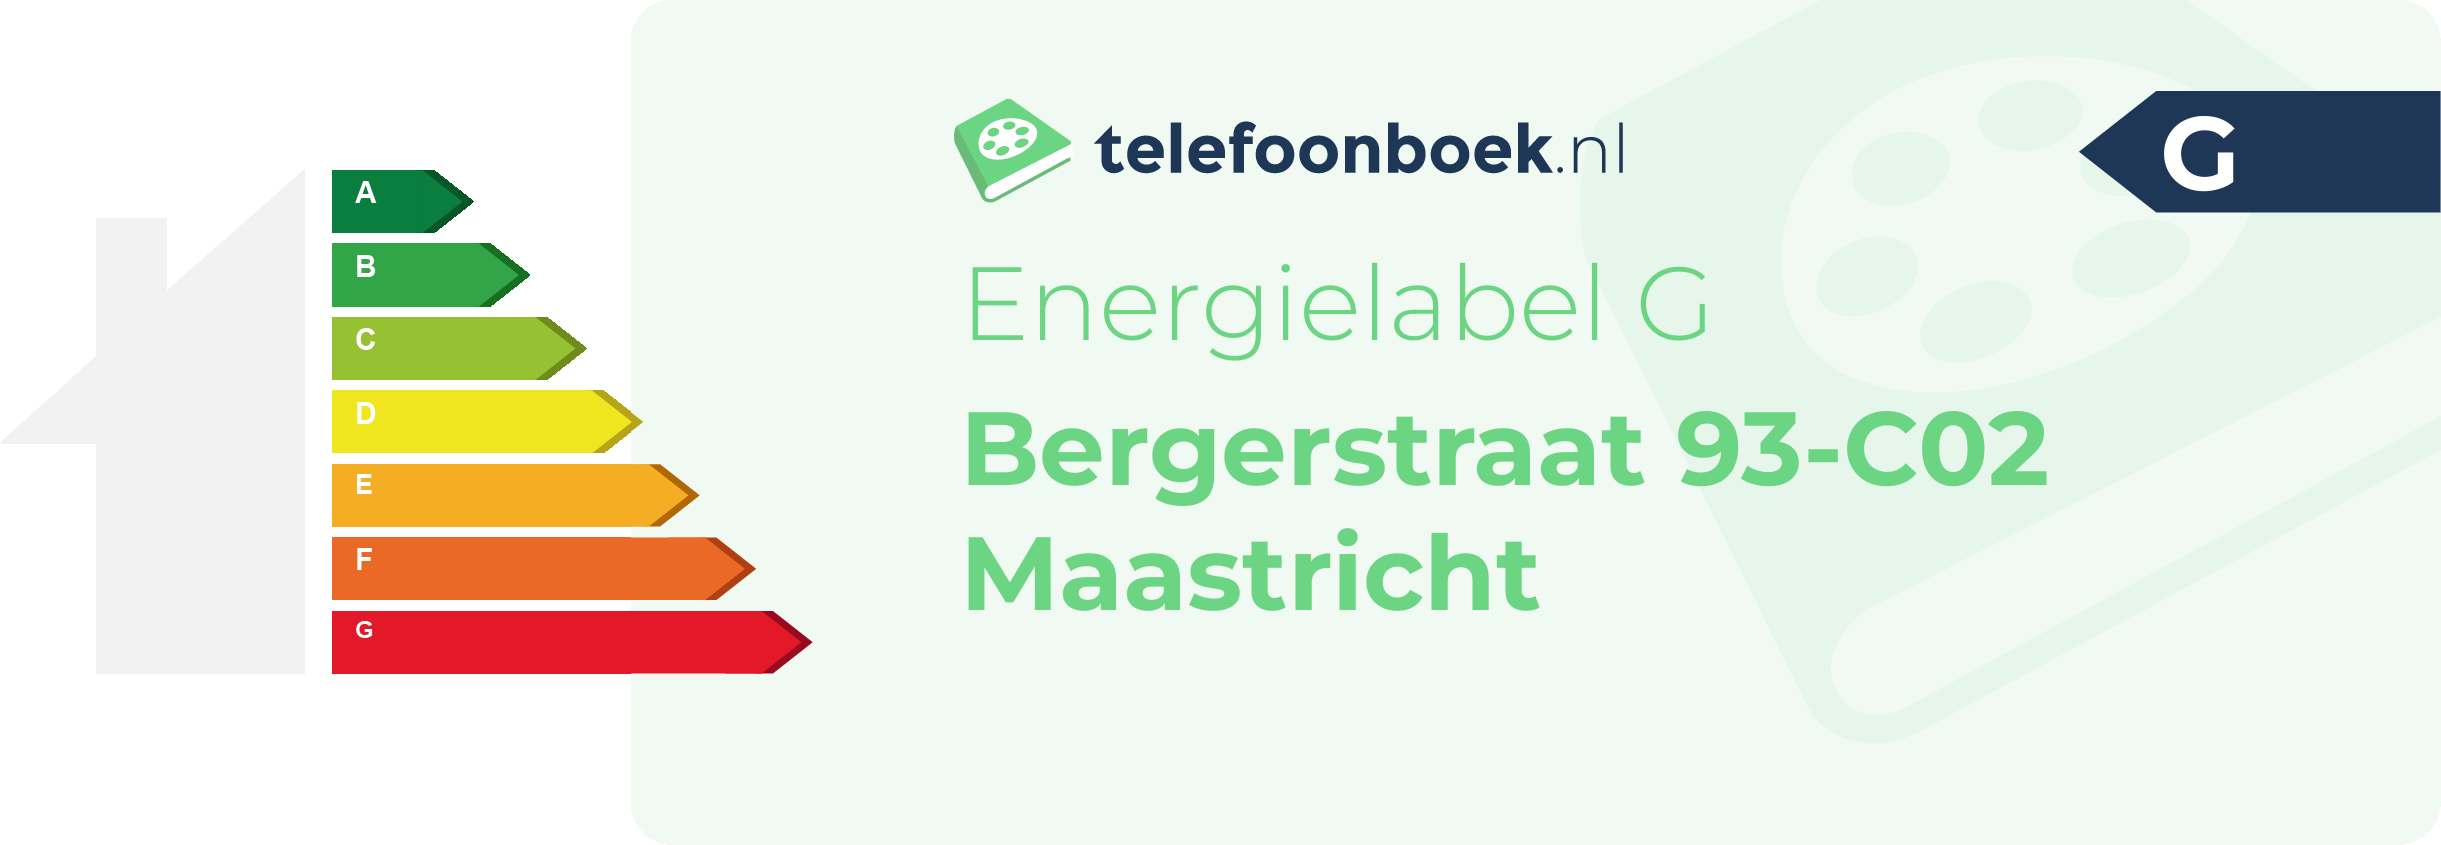 Energielabel Bergerstraat 93-C02 Maastricht